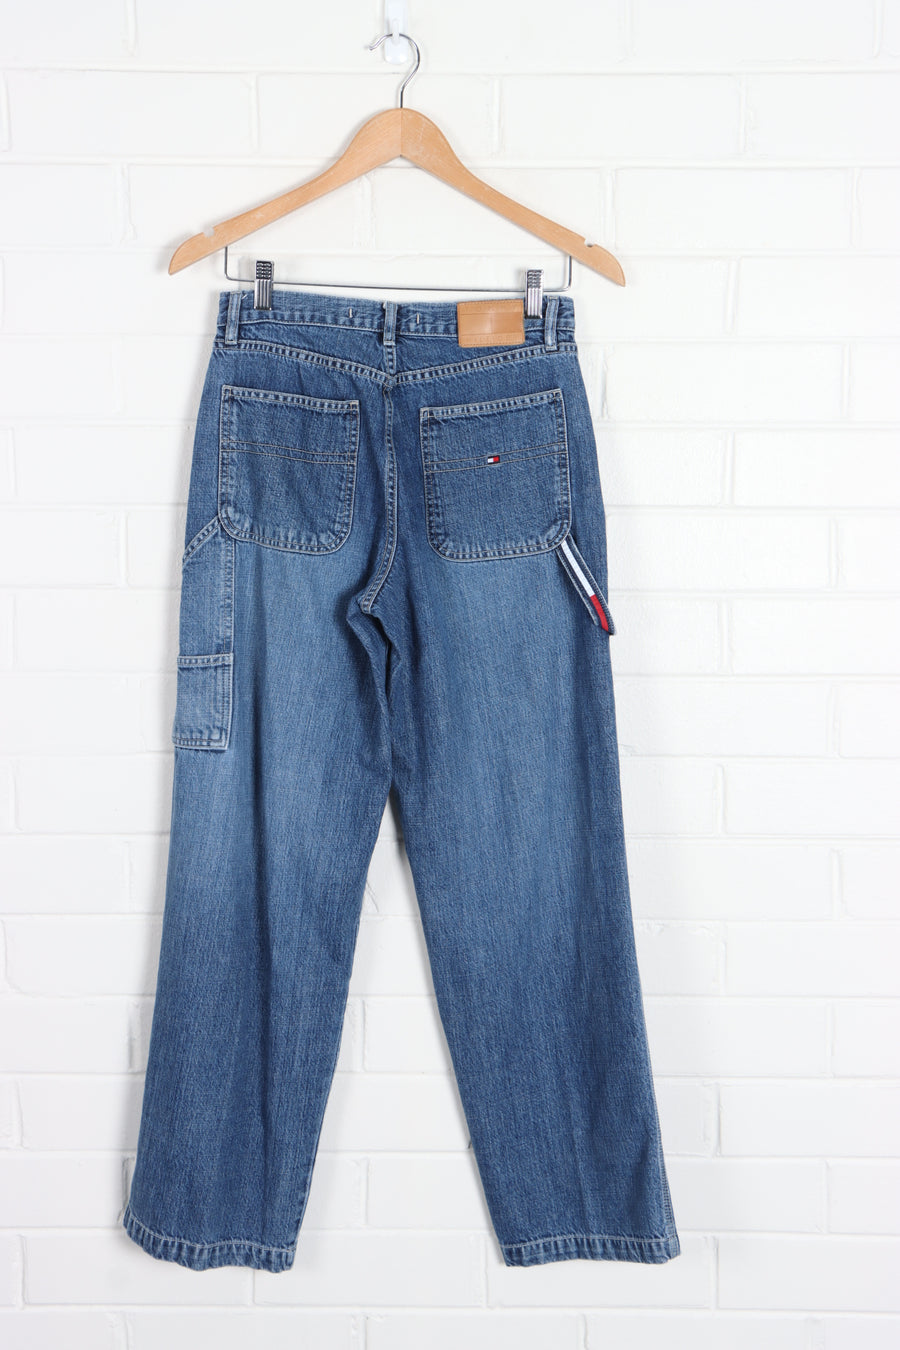 TOMMY HILFIGER Carpenter Sand Blasted Denim Mid Rise Jeans (Women's 6-8) - Vintage Sole Melbourne